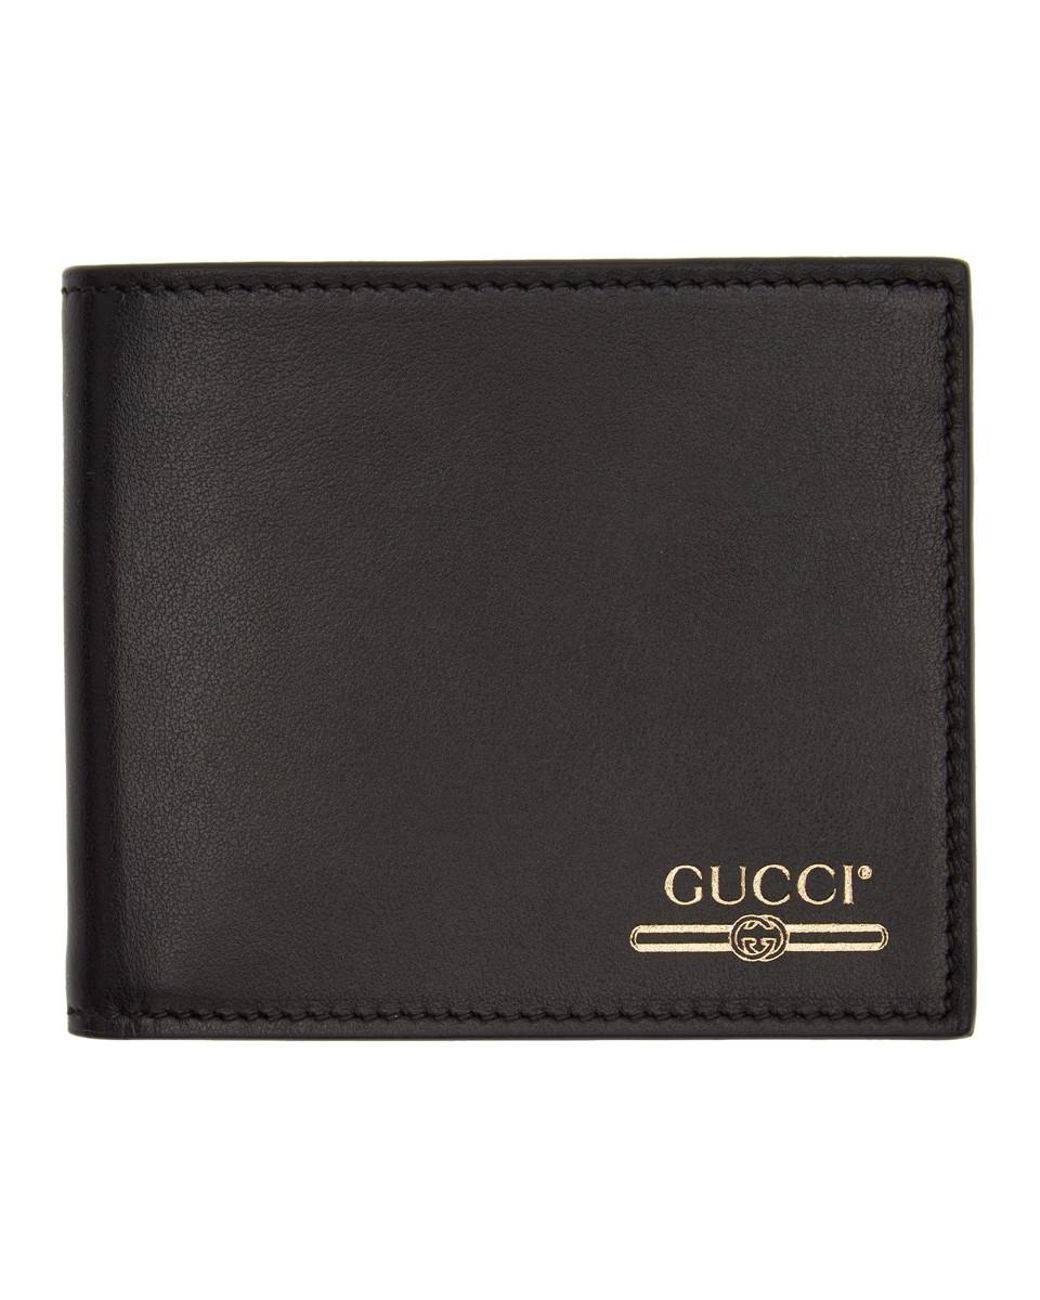 gucci wallet ssense, OFF 73%,www 